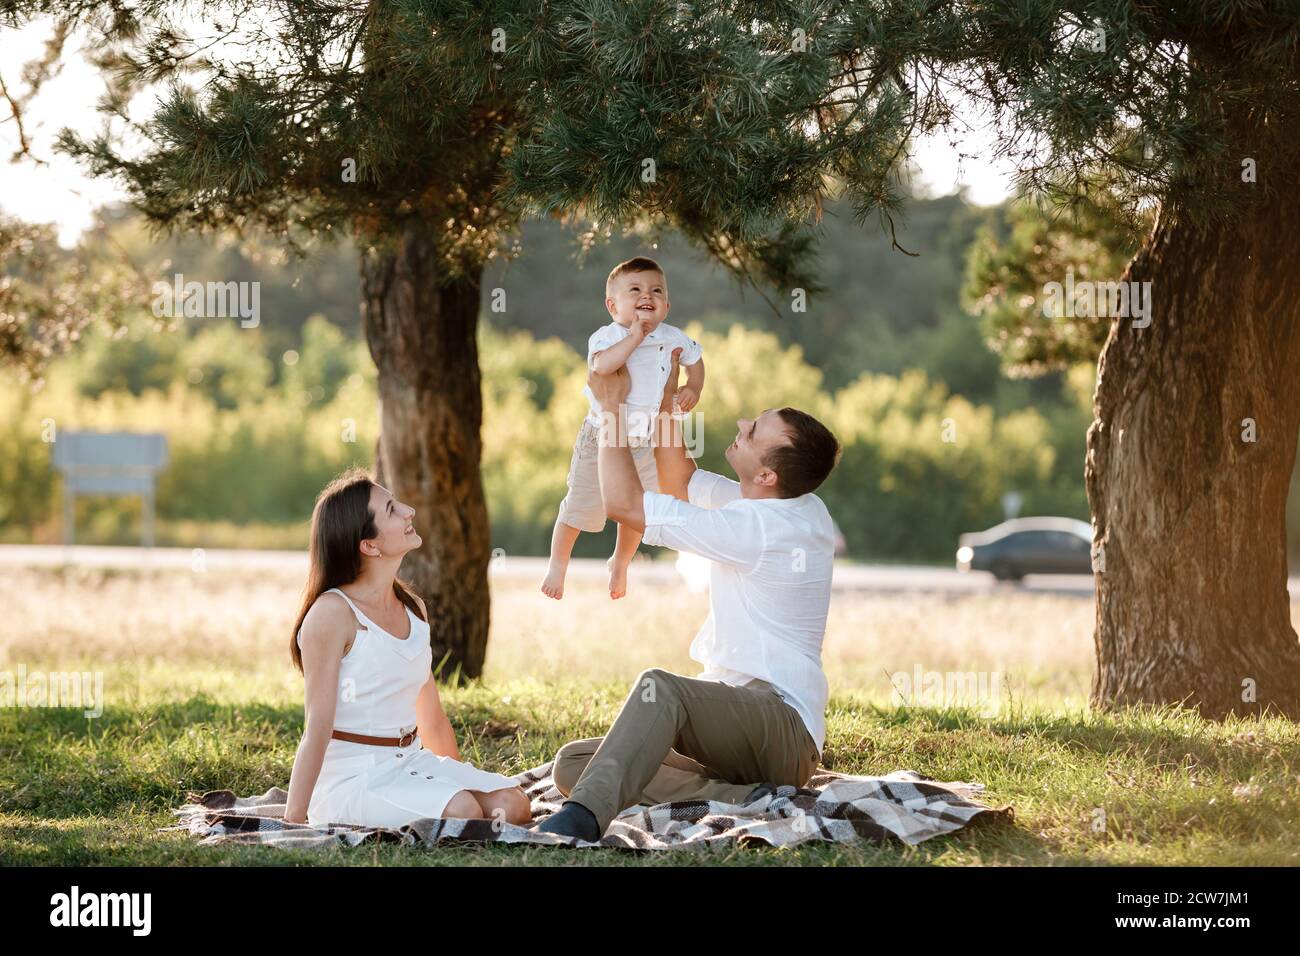 maman, papa lève son bébé garçon en plein air et regarde son sourire.  Parents heureux de passer du temps à jouer avec son fils dans le parc le  jour de l'été. Sélectif